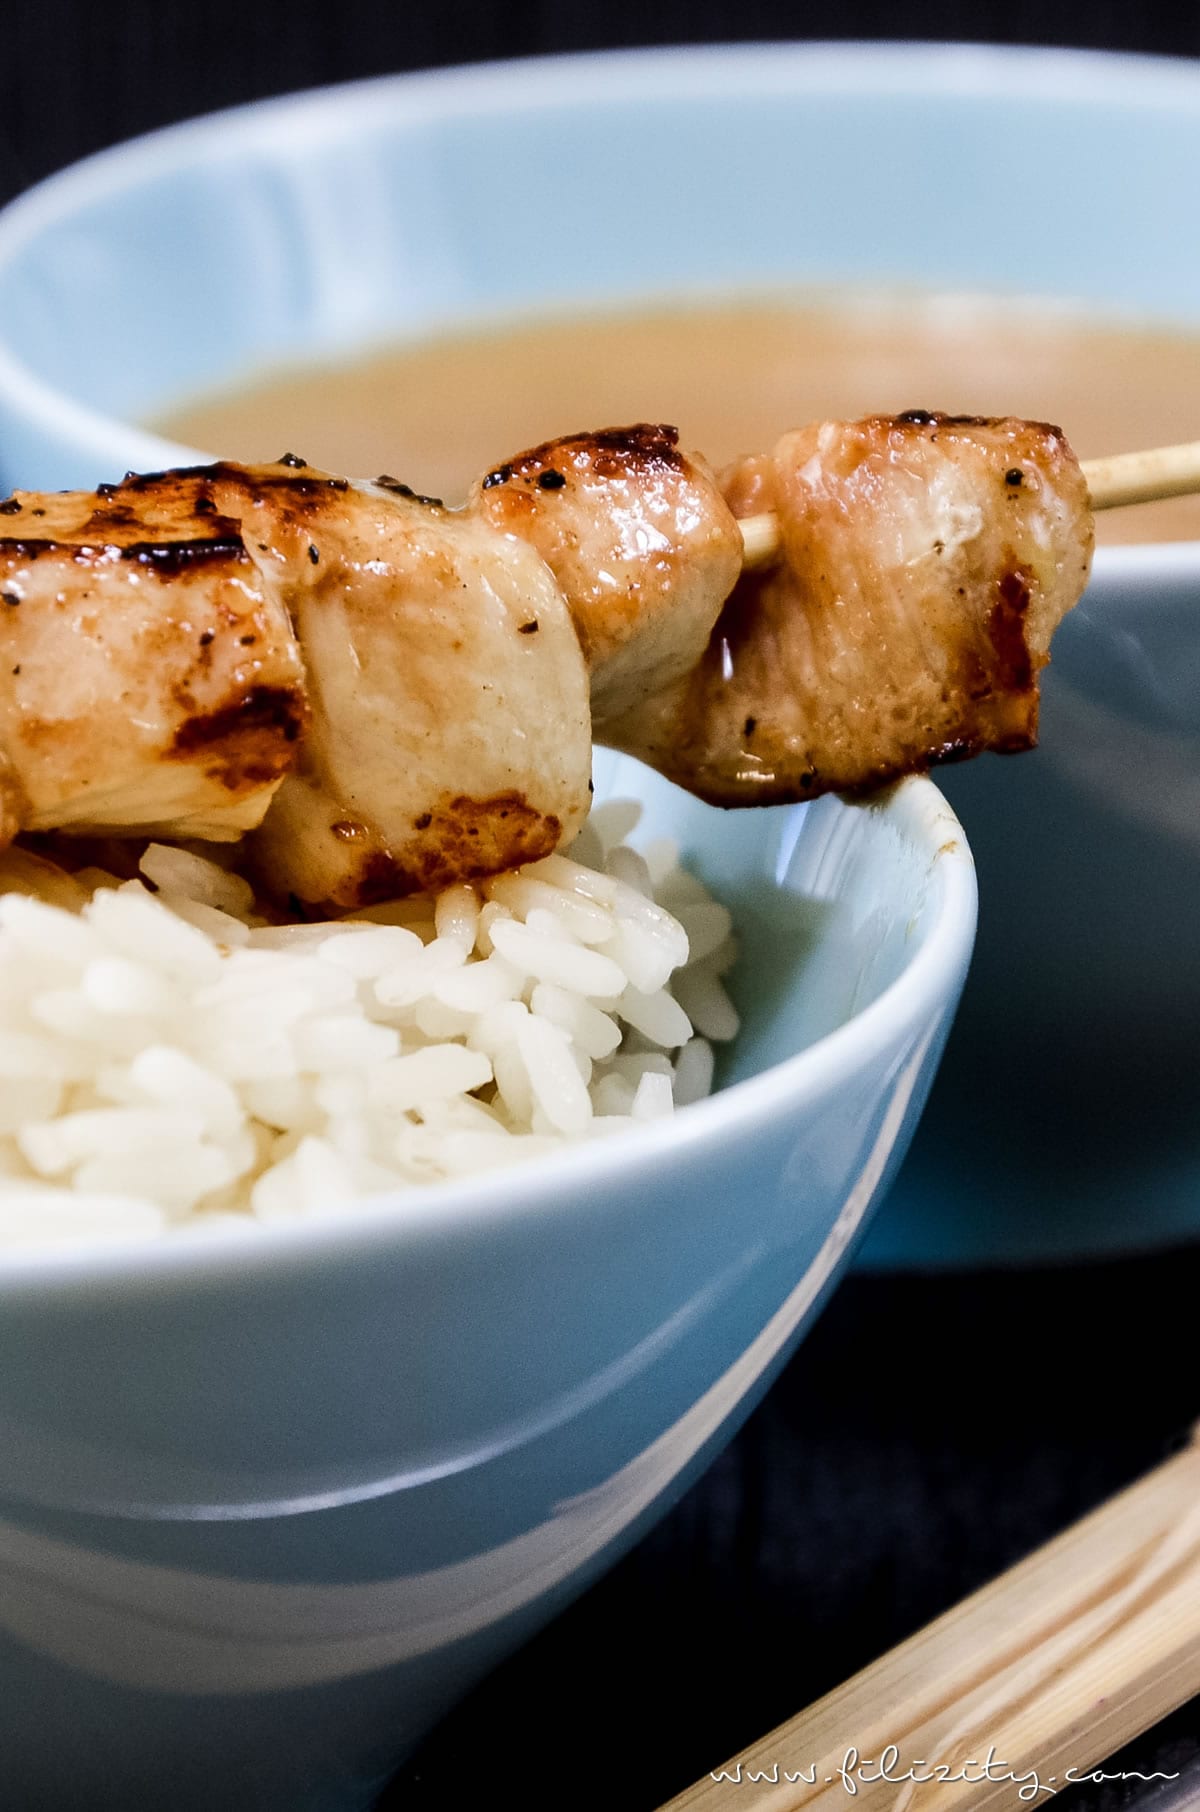 Asiatisches Rezept für Hähnchen-Spieße (Sate) mit Erdnuss-Soße | Filizity.com | Food-Blog aus dem Rheinland #sate #grillen